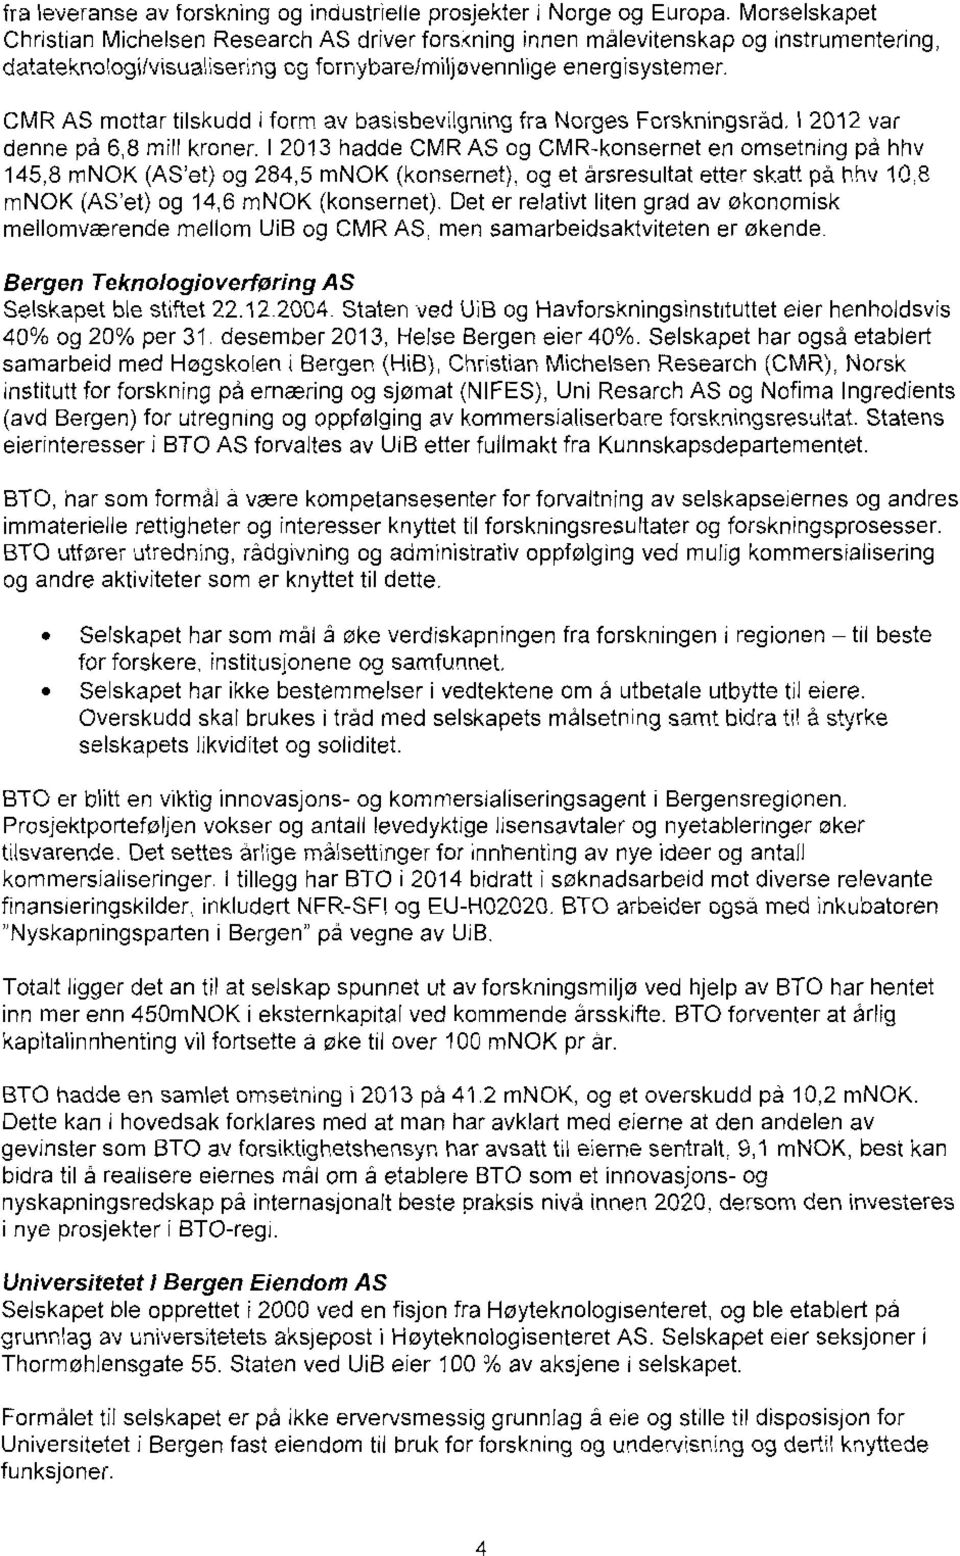 CMR AS mottar filskudd form av basisbevrigning fra Norges Forskningsrad, I 2012 var denne på 6,8 mill kroner.